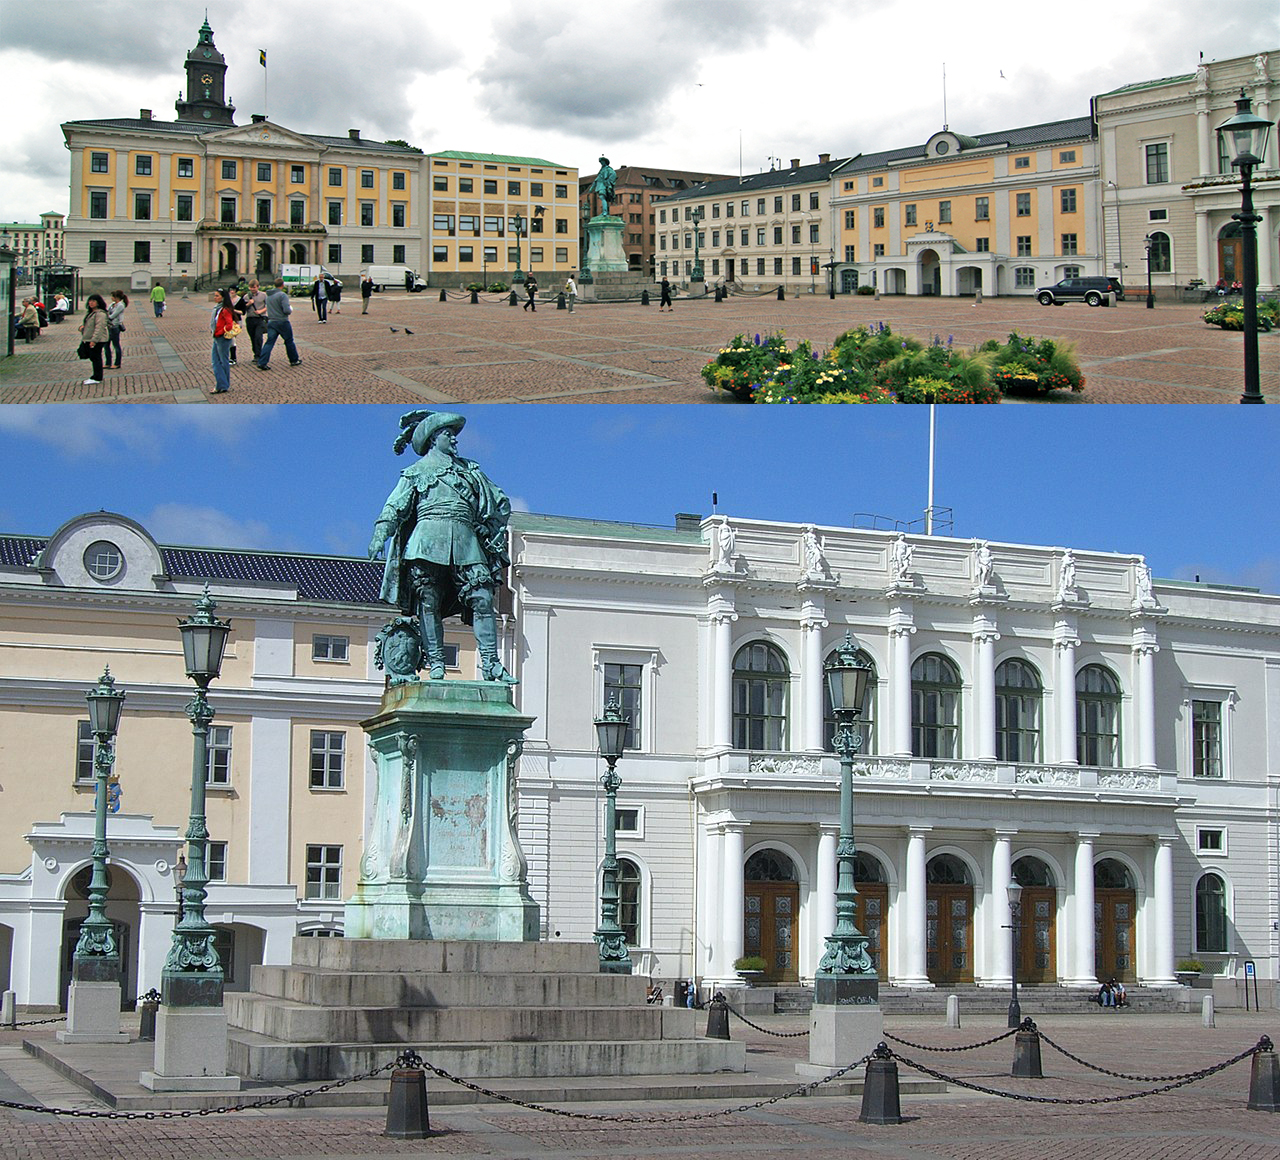 Är Gustaf Adolfs torg i Göteborg Sveriges vackraste torg?